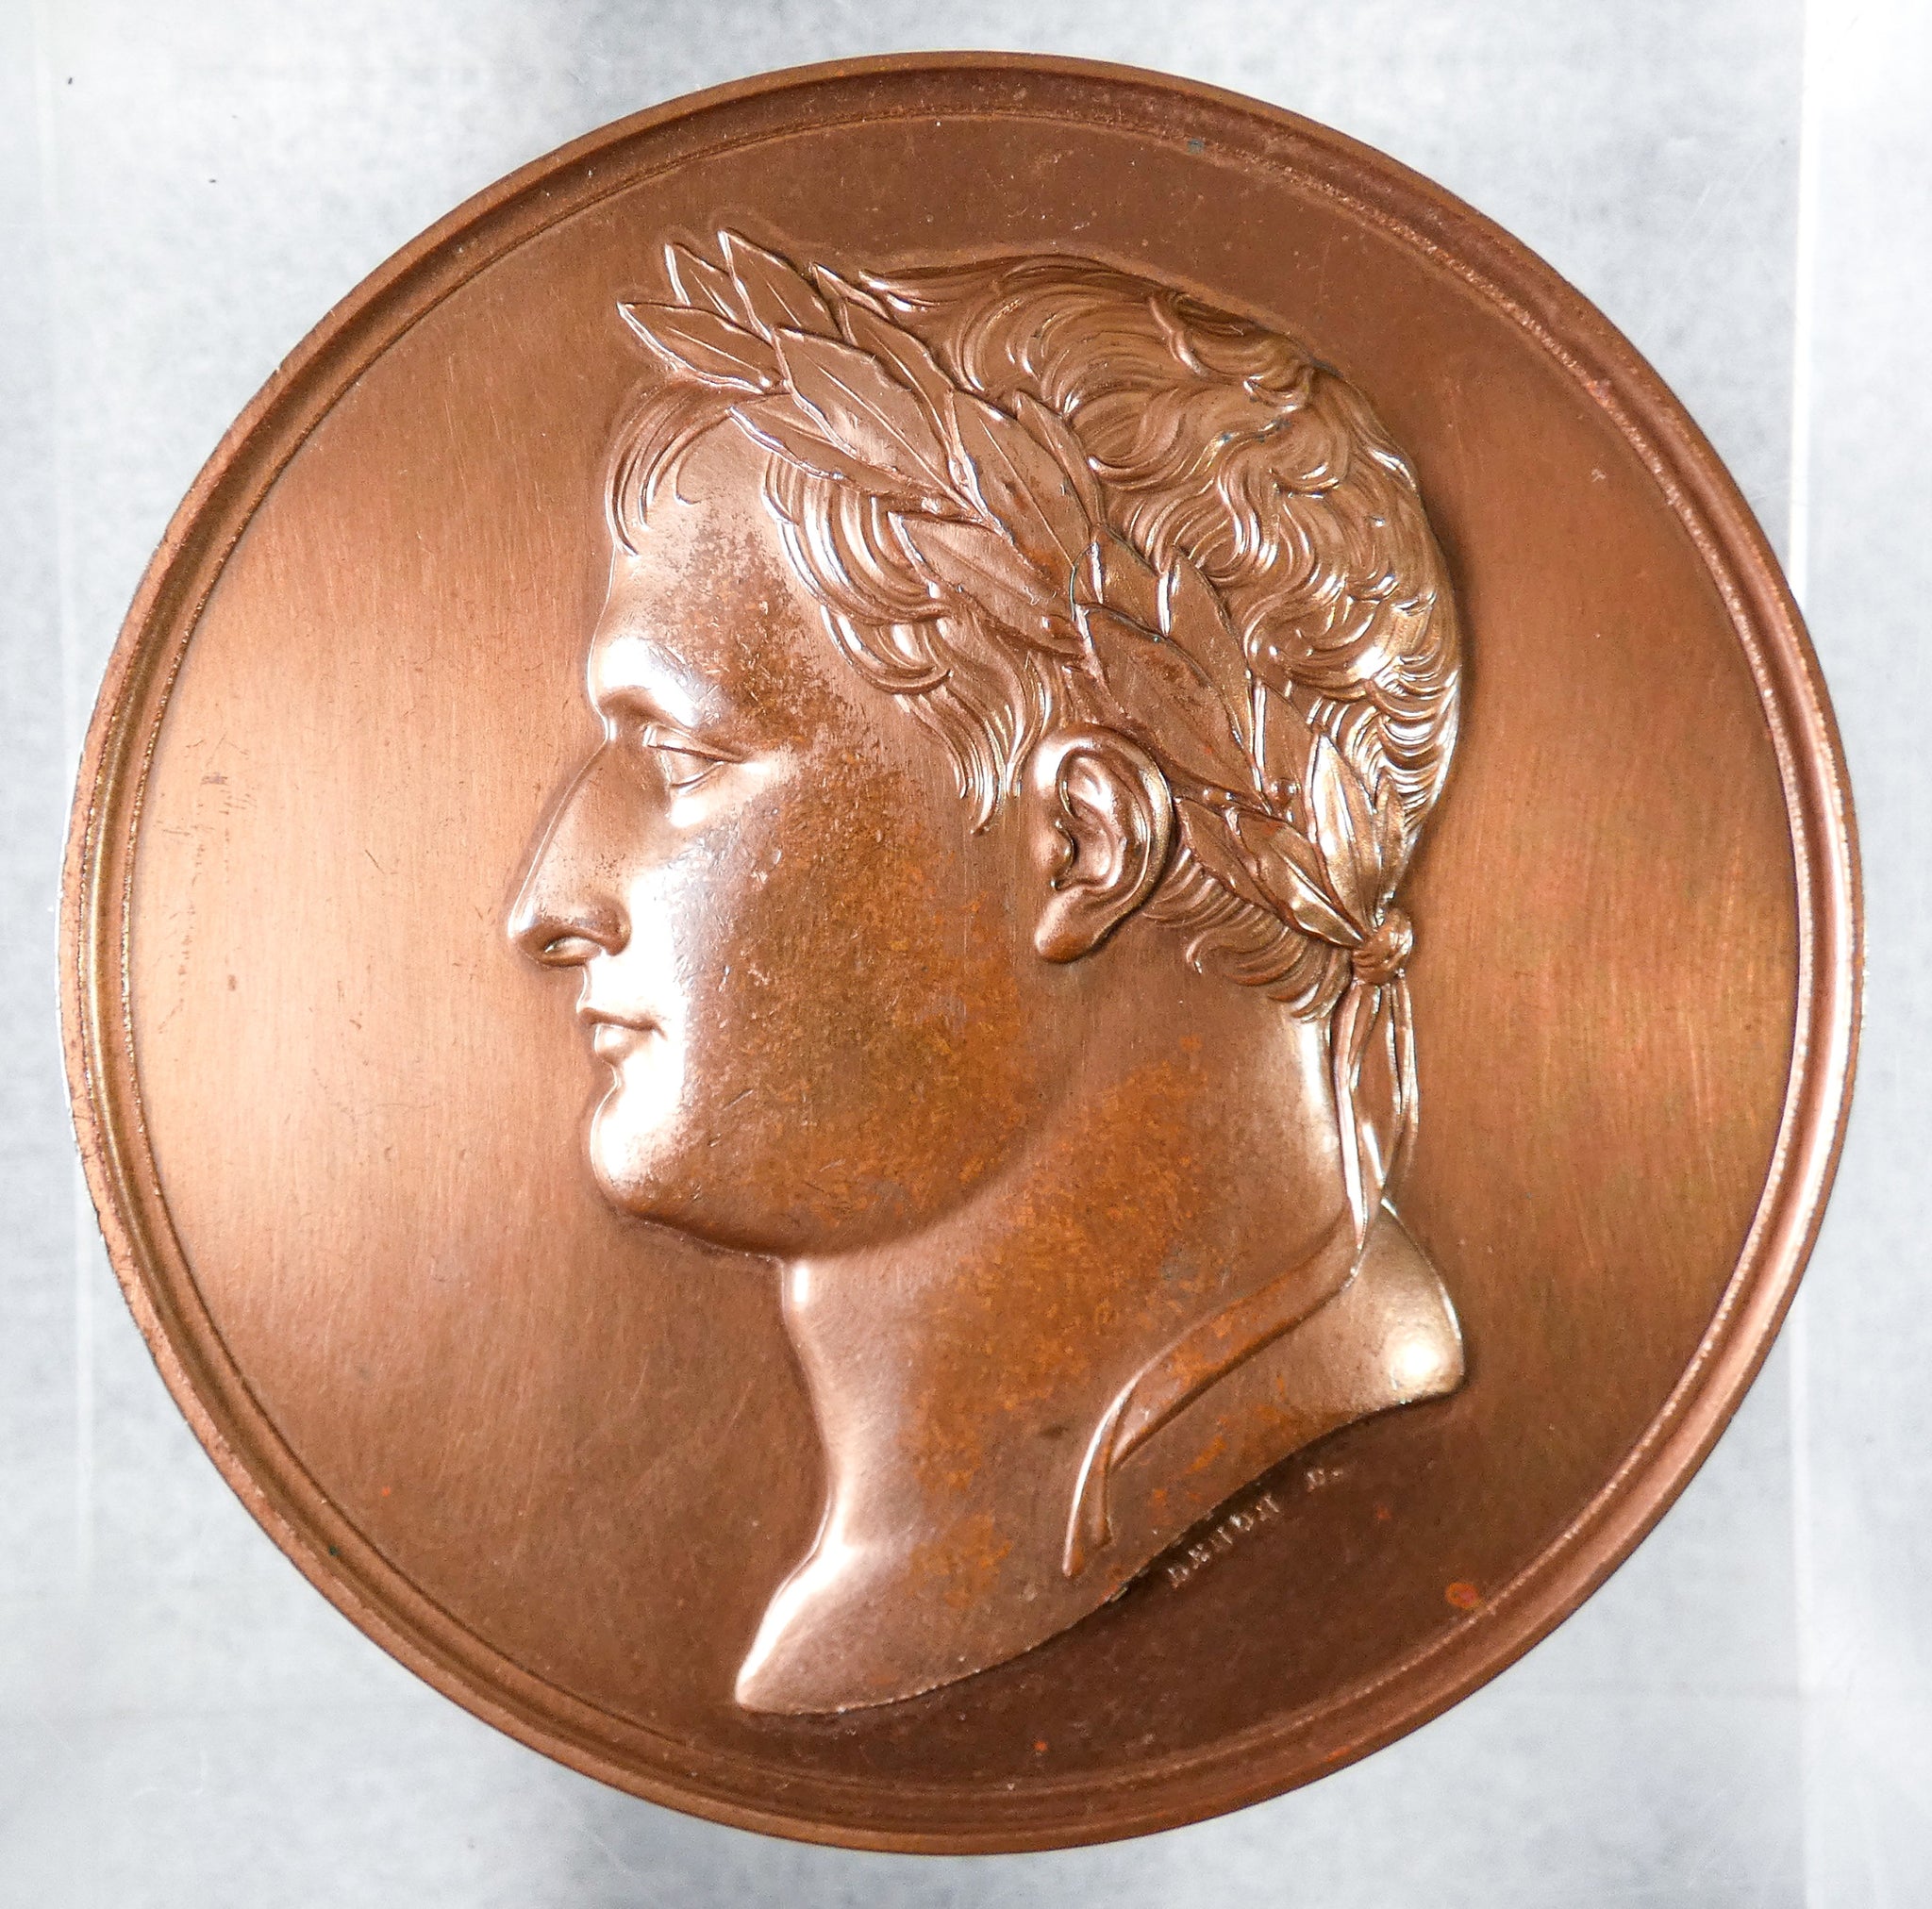 medaglia napoleone bonaparte battesimo re roma 1811 andrieu medaille france